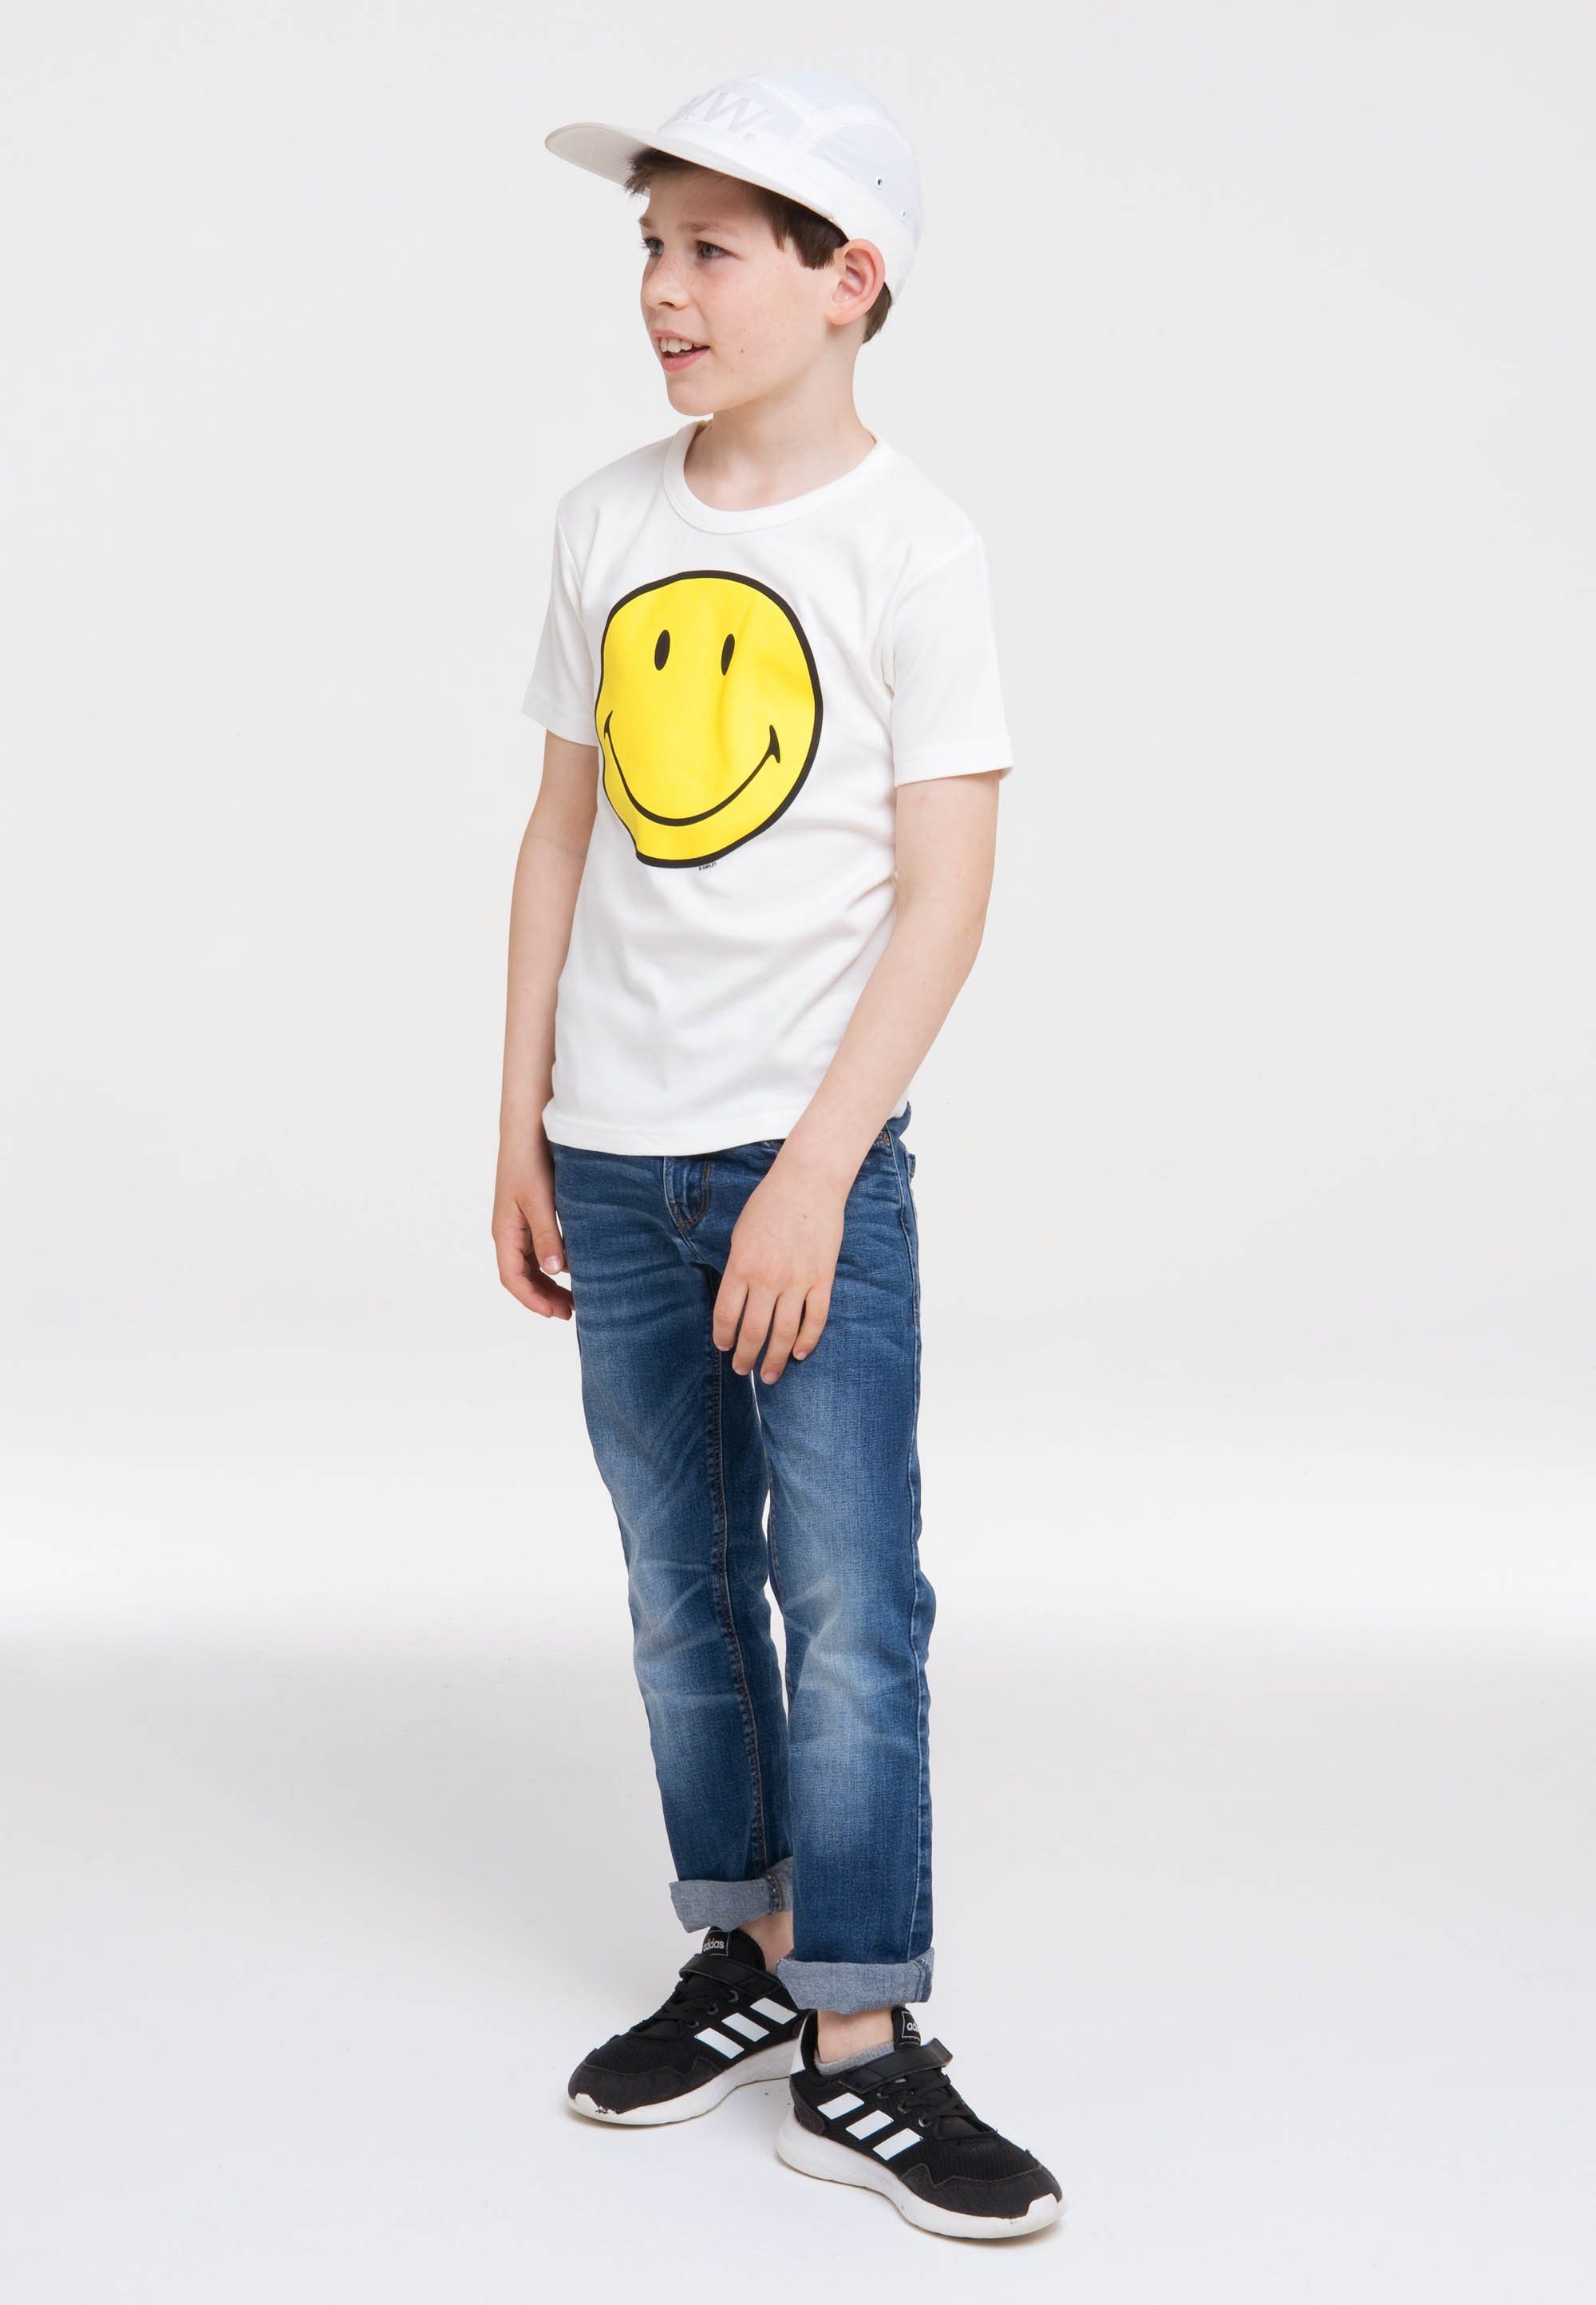 T-Shirt tollem LOGOSHIRT Face Smiley für Smiley Kinder von in Smiley-Design, Logoshirt T-Shirt